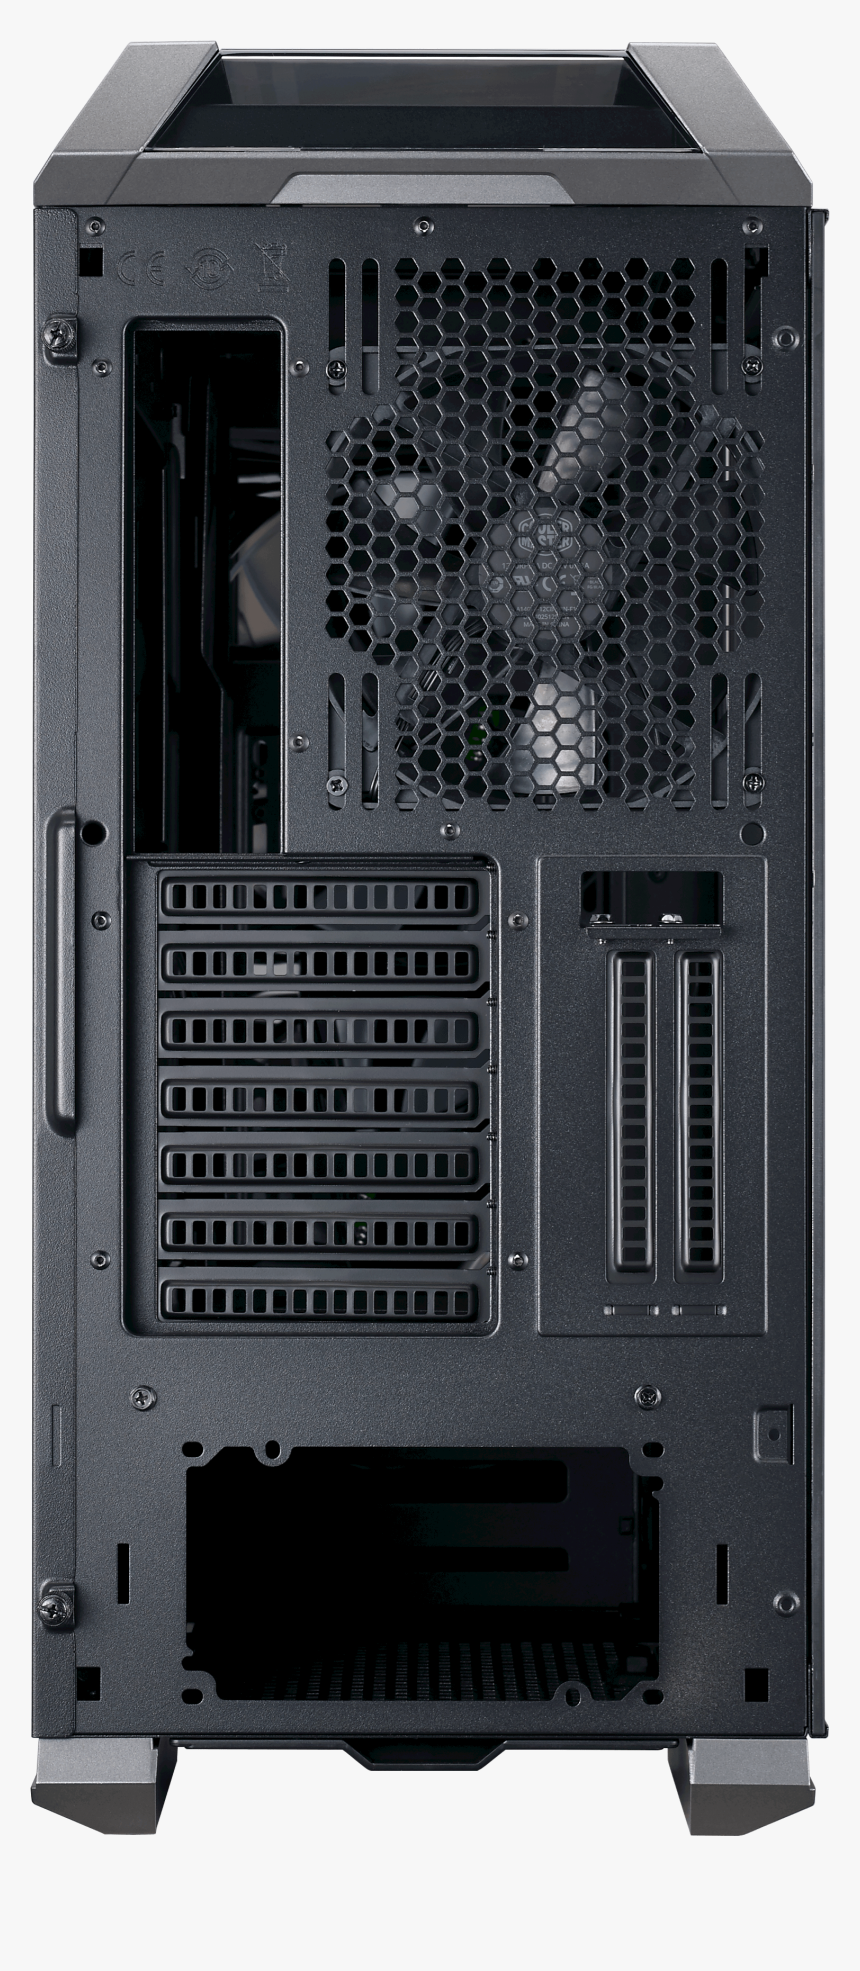 Coolermaster Mastercase H500p Rgb Pc, HD Png Download, Free Download